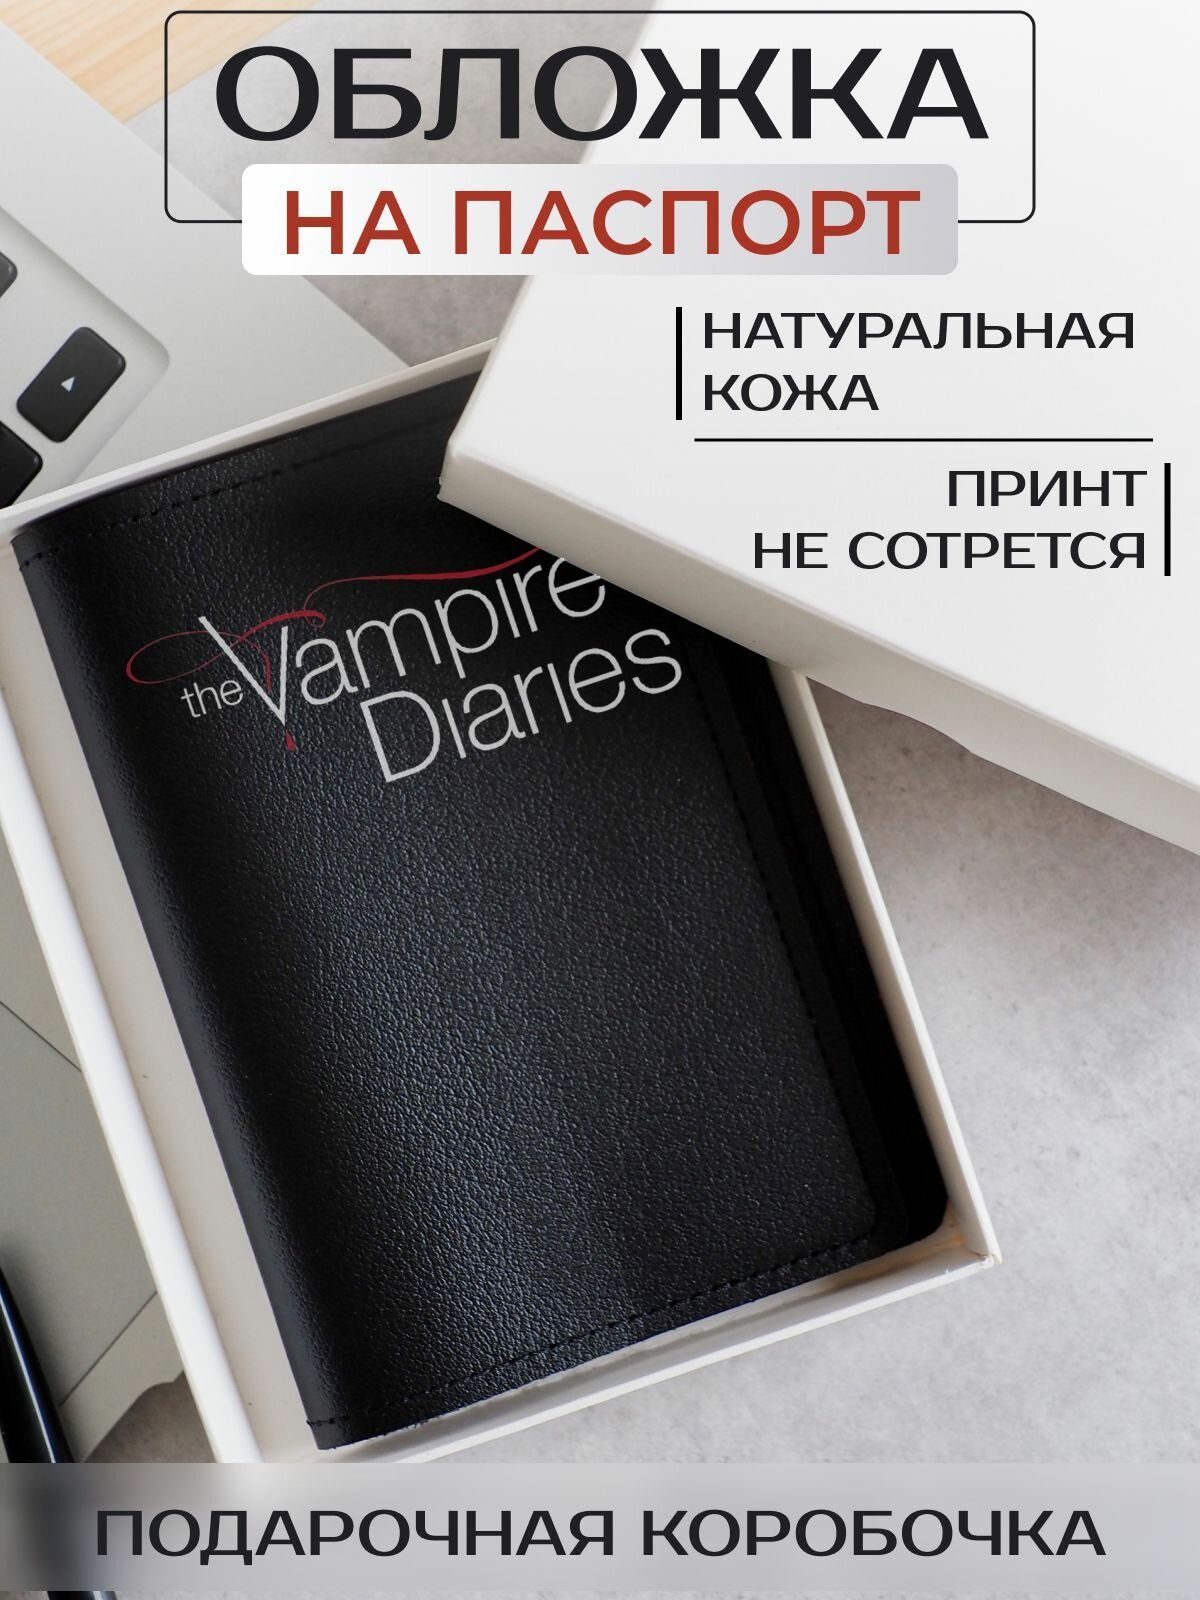 Обложка для паспорта RUSSIAN HandMade Обложка на паспорт Дневники вампира